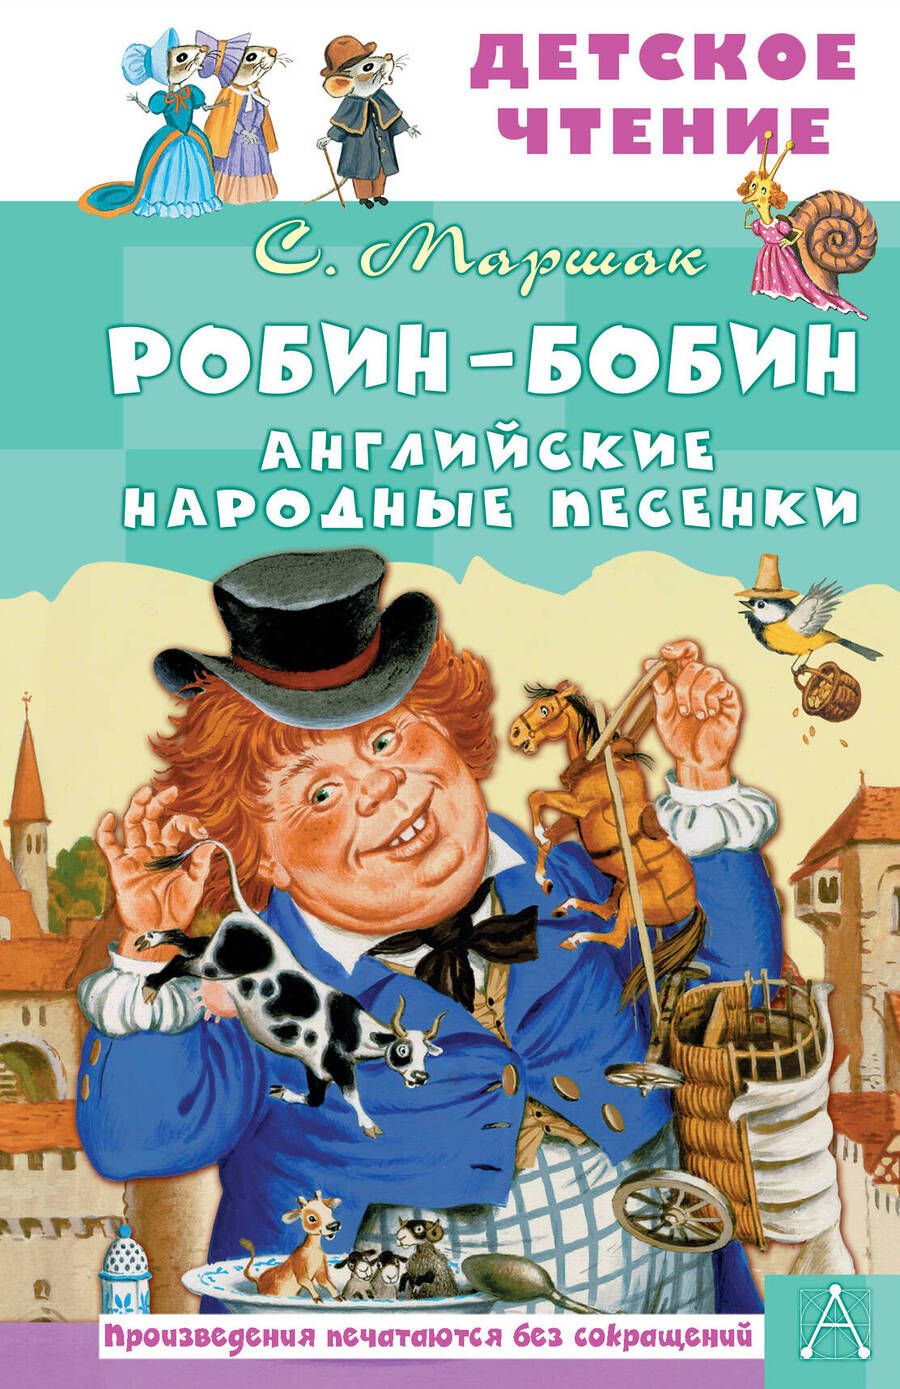 Обложка книги "Маршак: Робин-Бобин. Английские народные песенки"